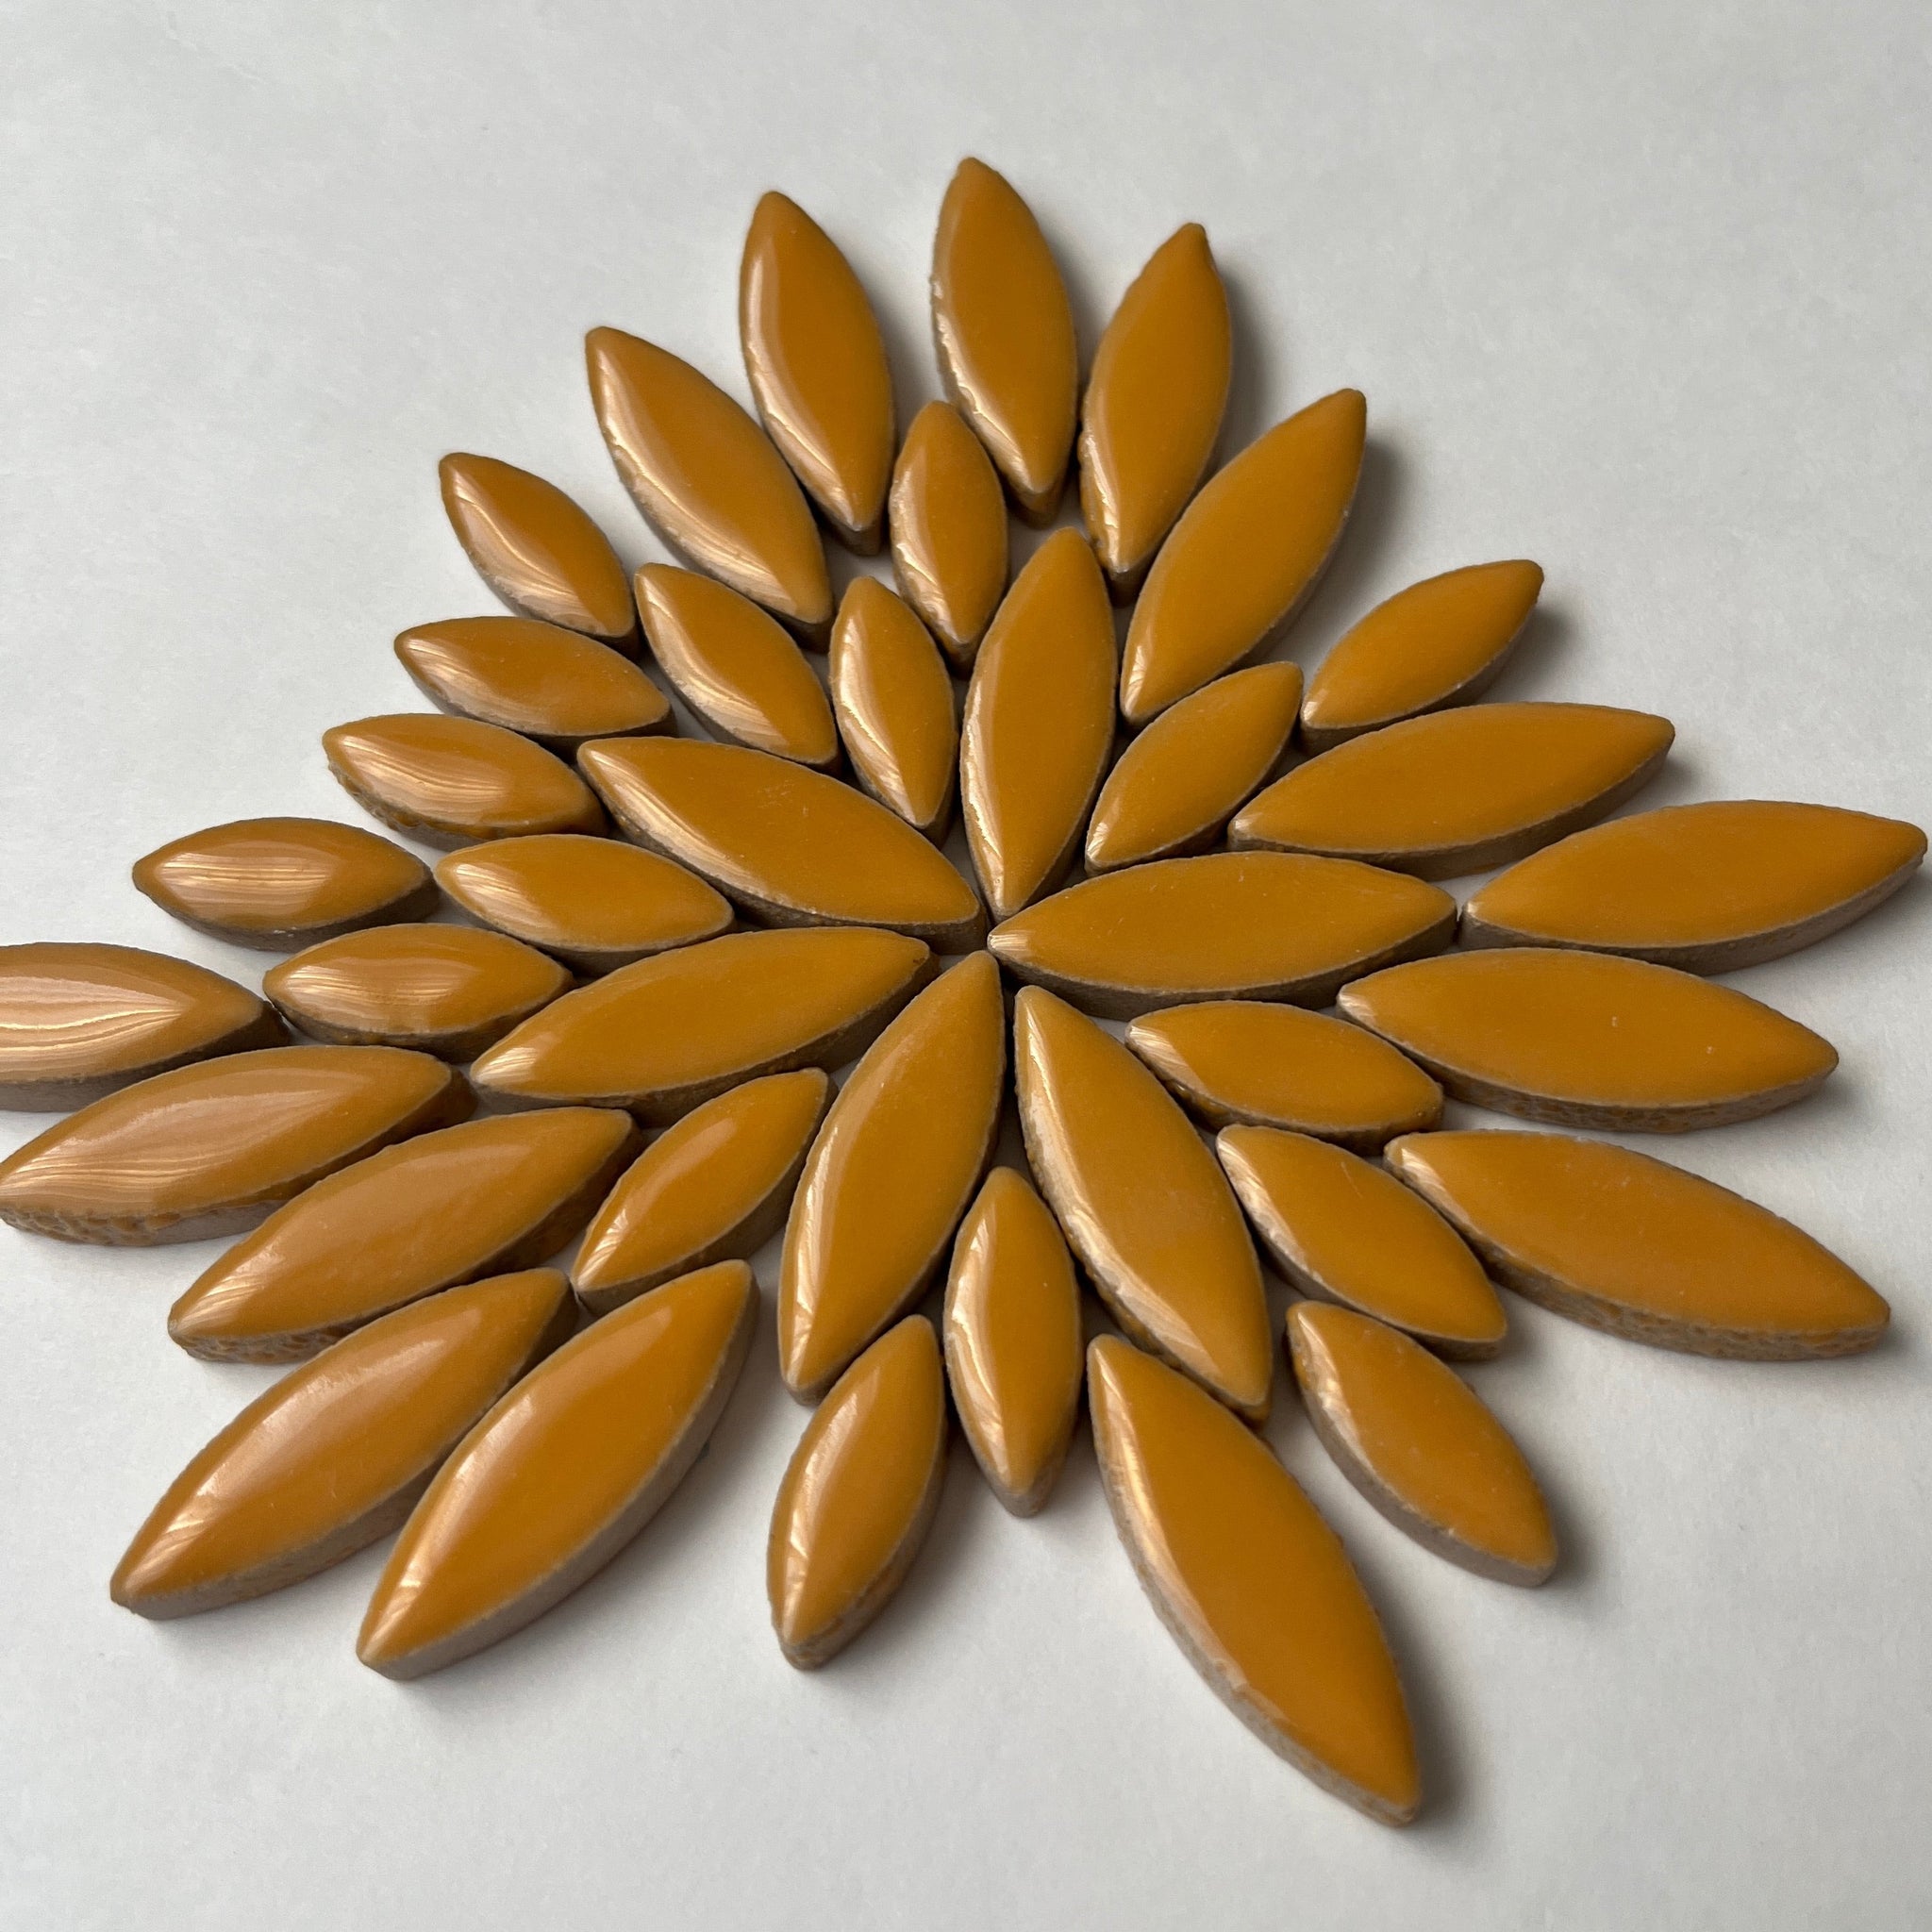 Ceramic Petals & Leaves for Mosaics - Tangerine Mix